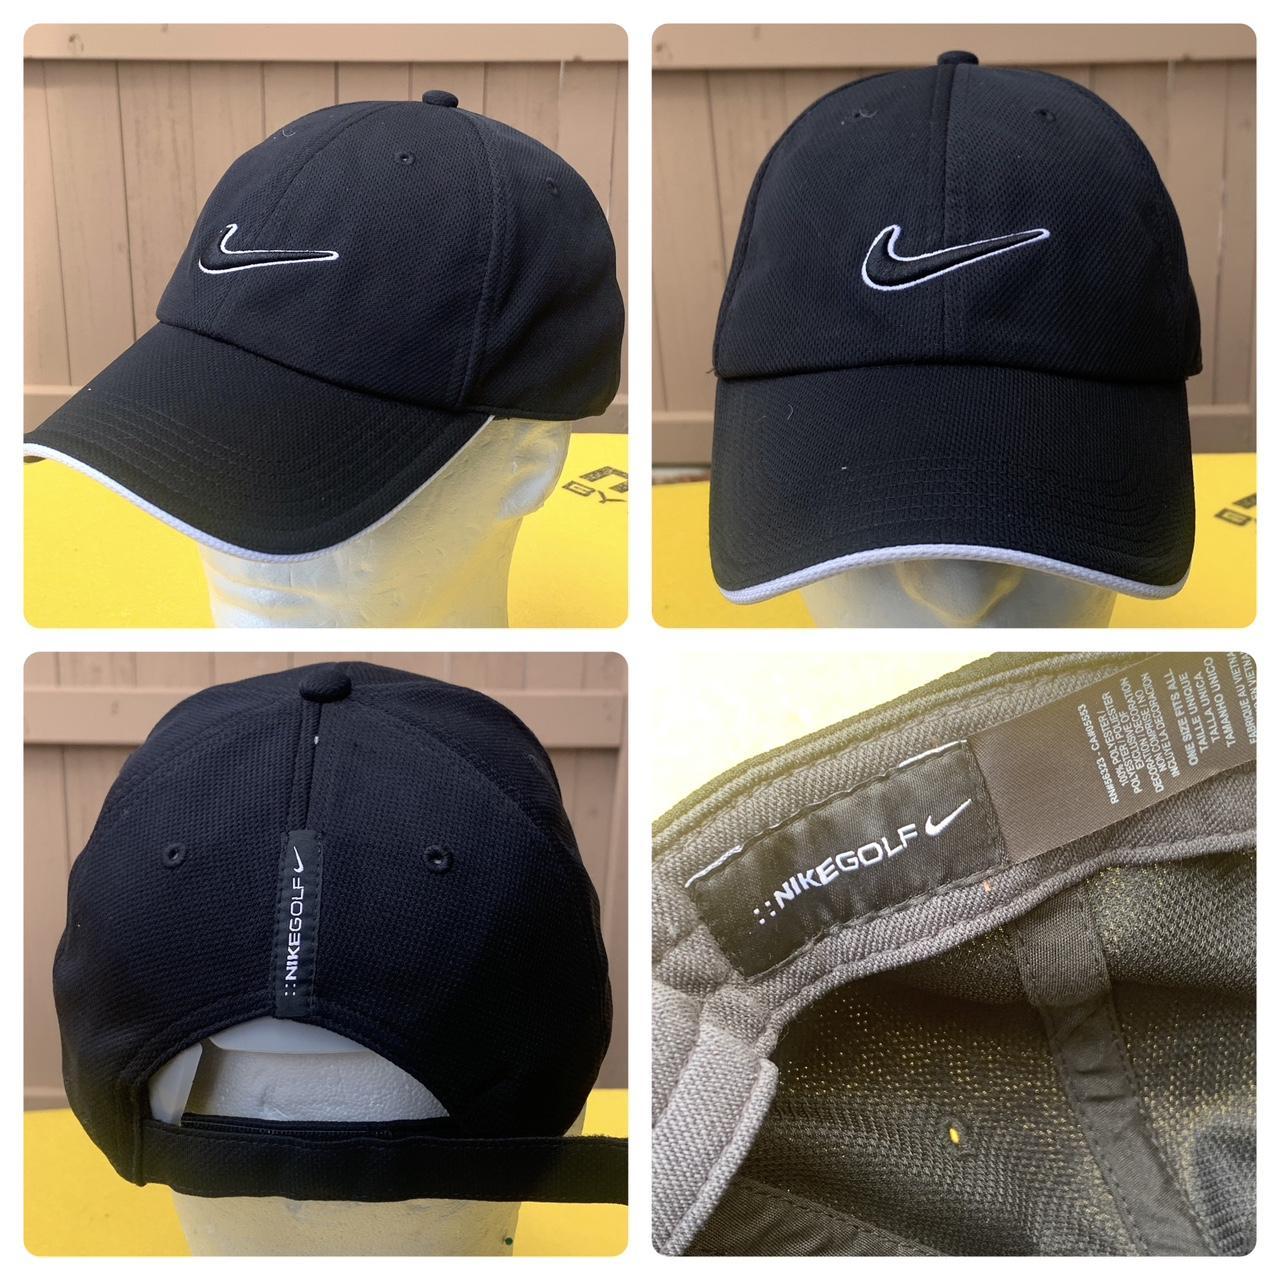 Nike men's black and white hat Unisex Nike Golf - Depop